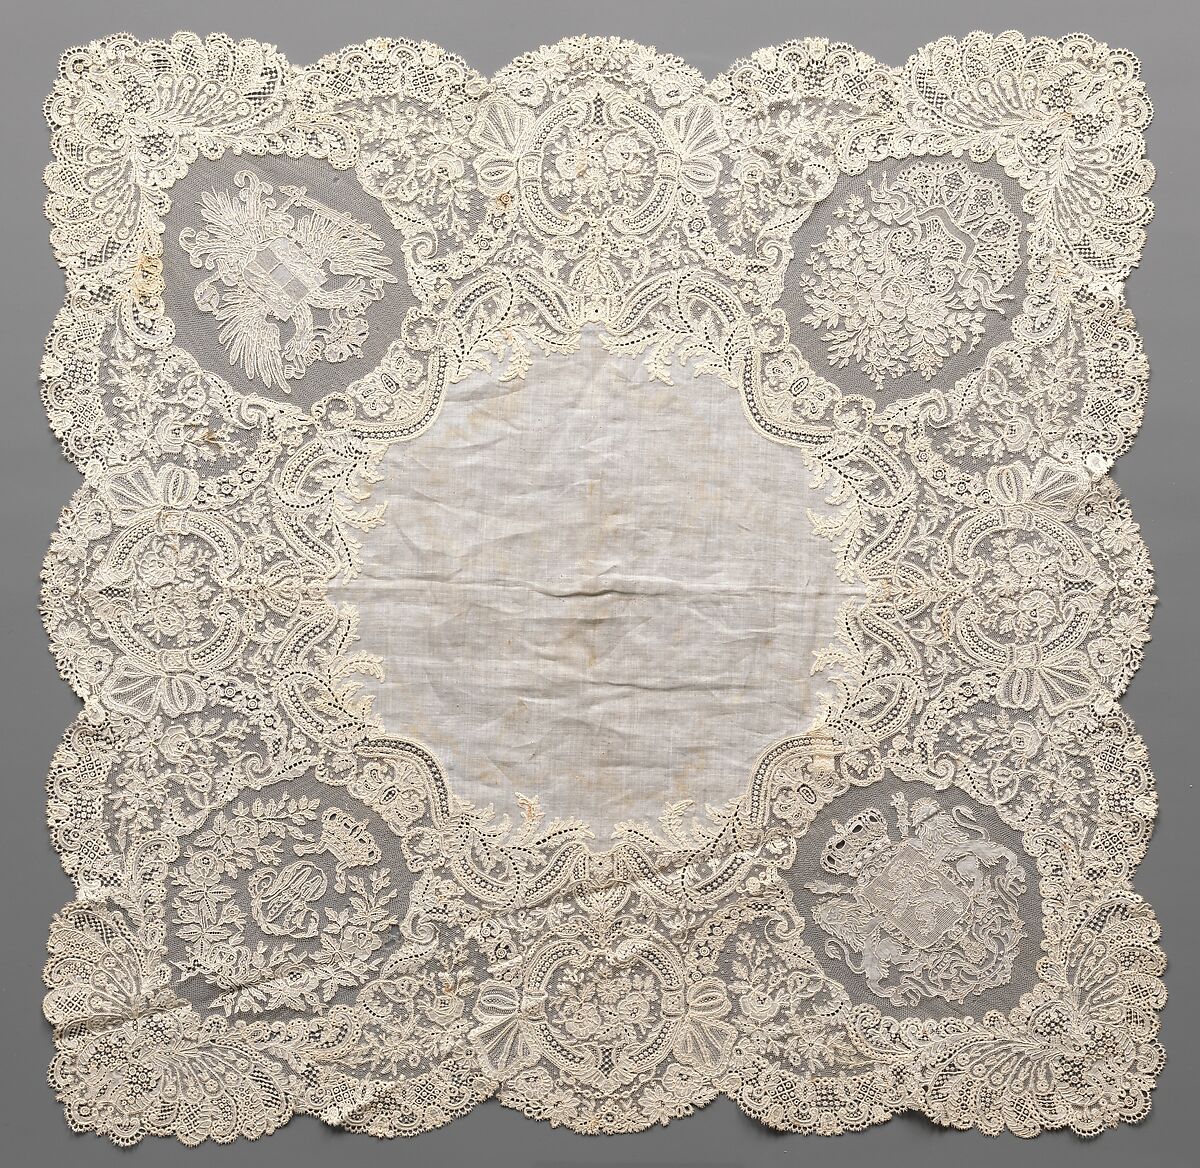 Handkerchief, Linen and cotton, needle lace (point de gaze), bobbin lace, Belgian, Brussels 